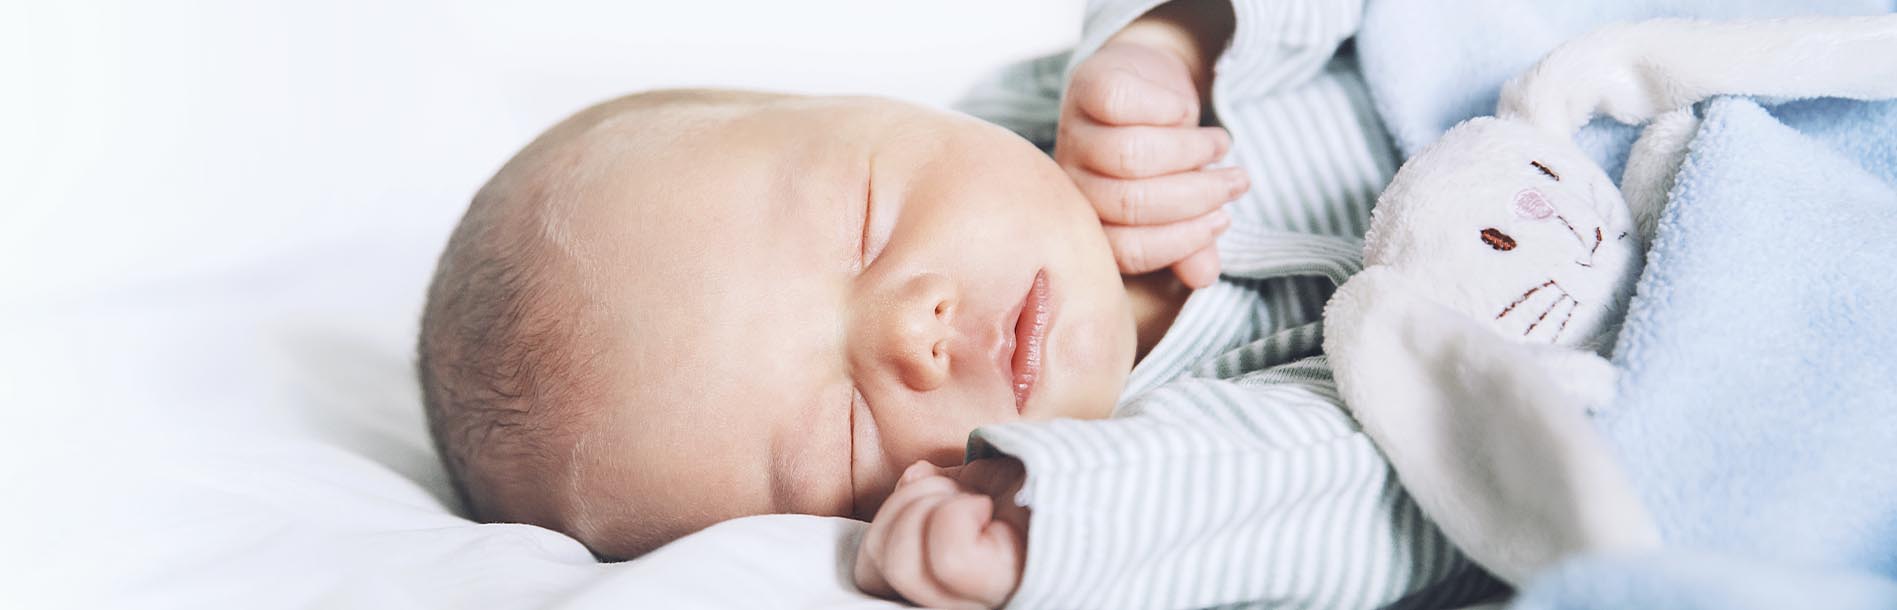 5 dicas para fazer o bebê dormir a noite toda